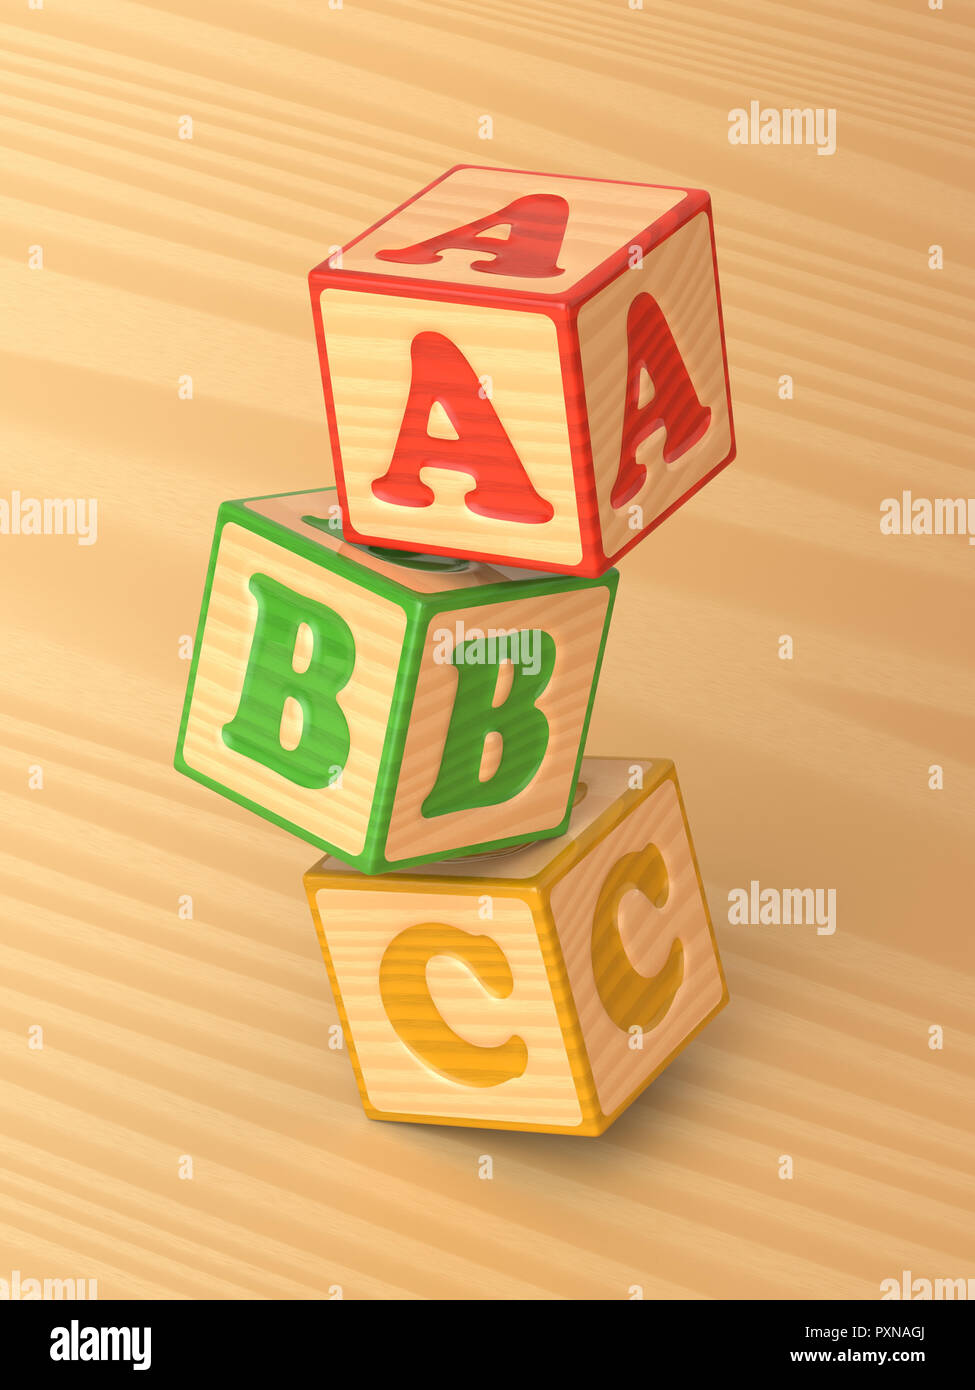 3D-gerenderte schräger Blick auf das Taumeln der roten, grünen und gelben Holzspielzeug alphabet Blöcke auf einem hellen Hintergrund. Stockfoto